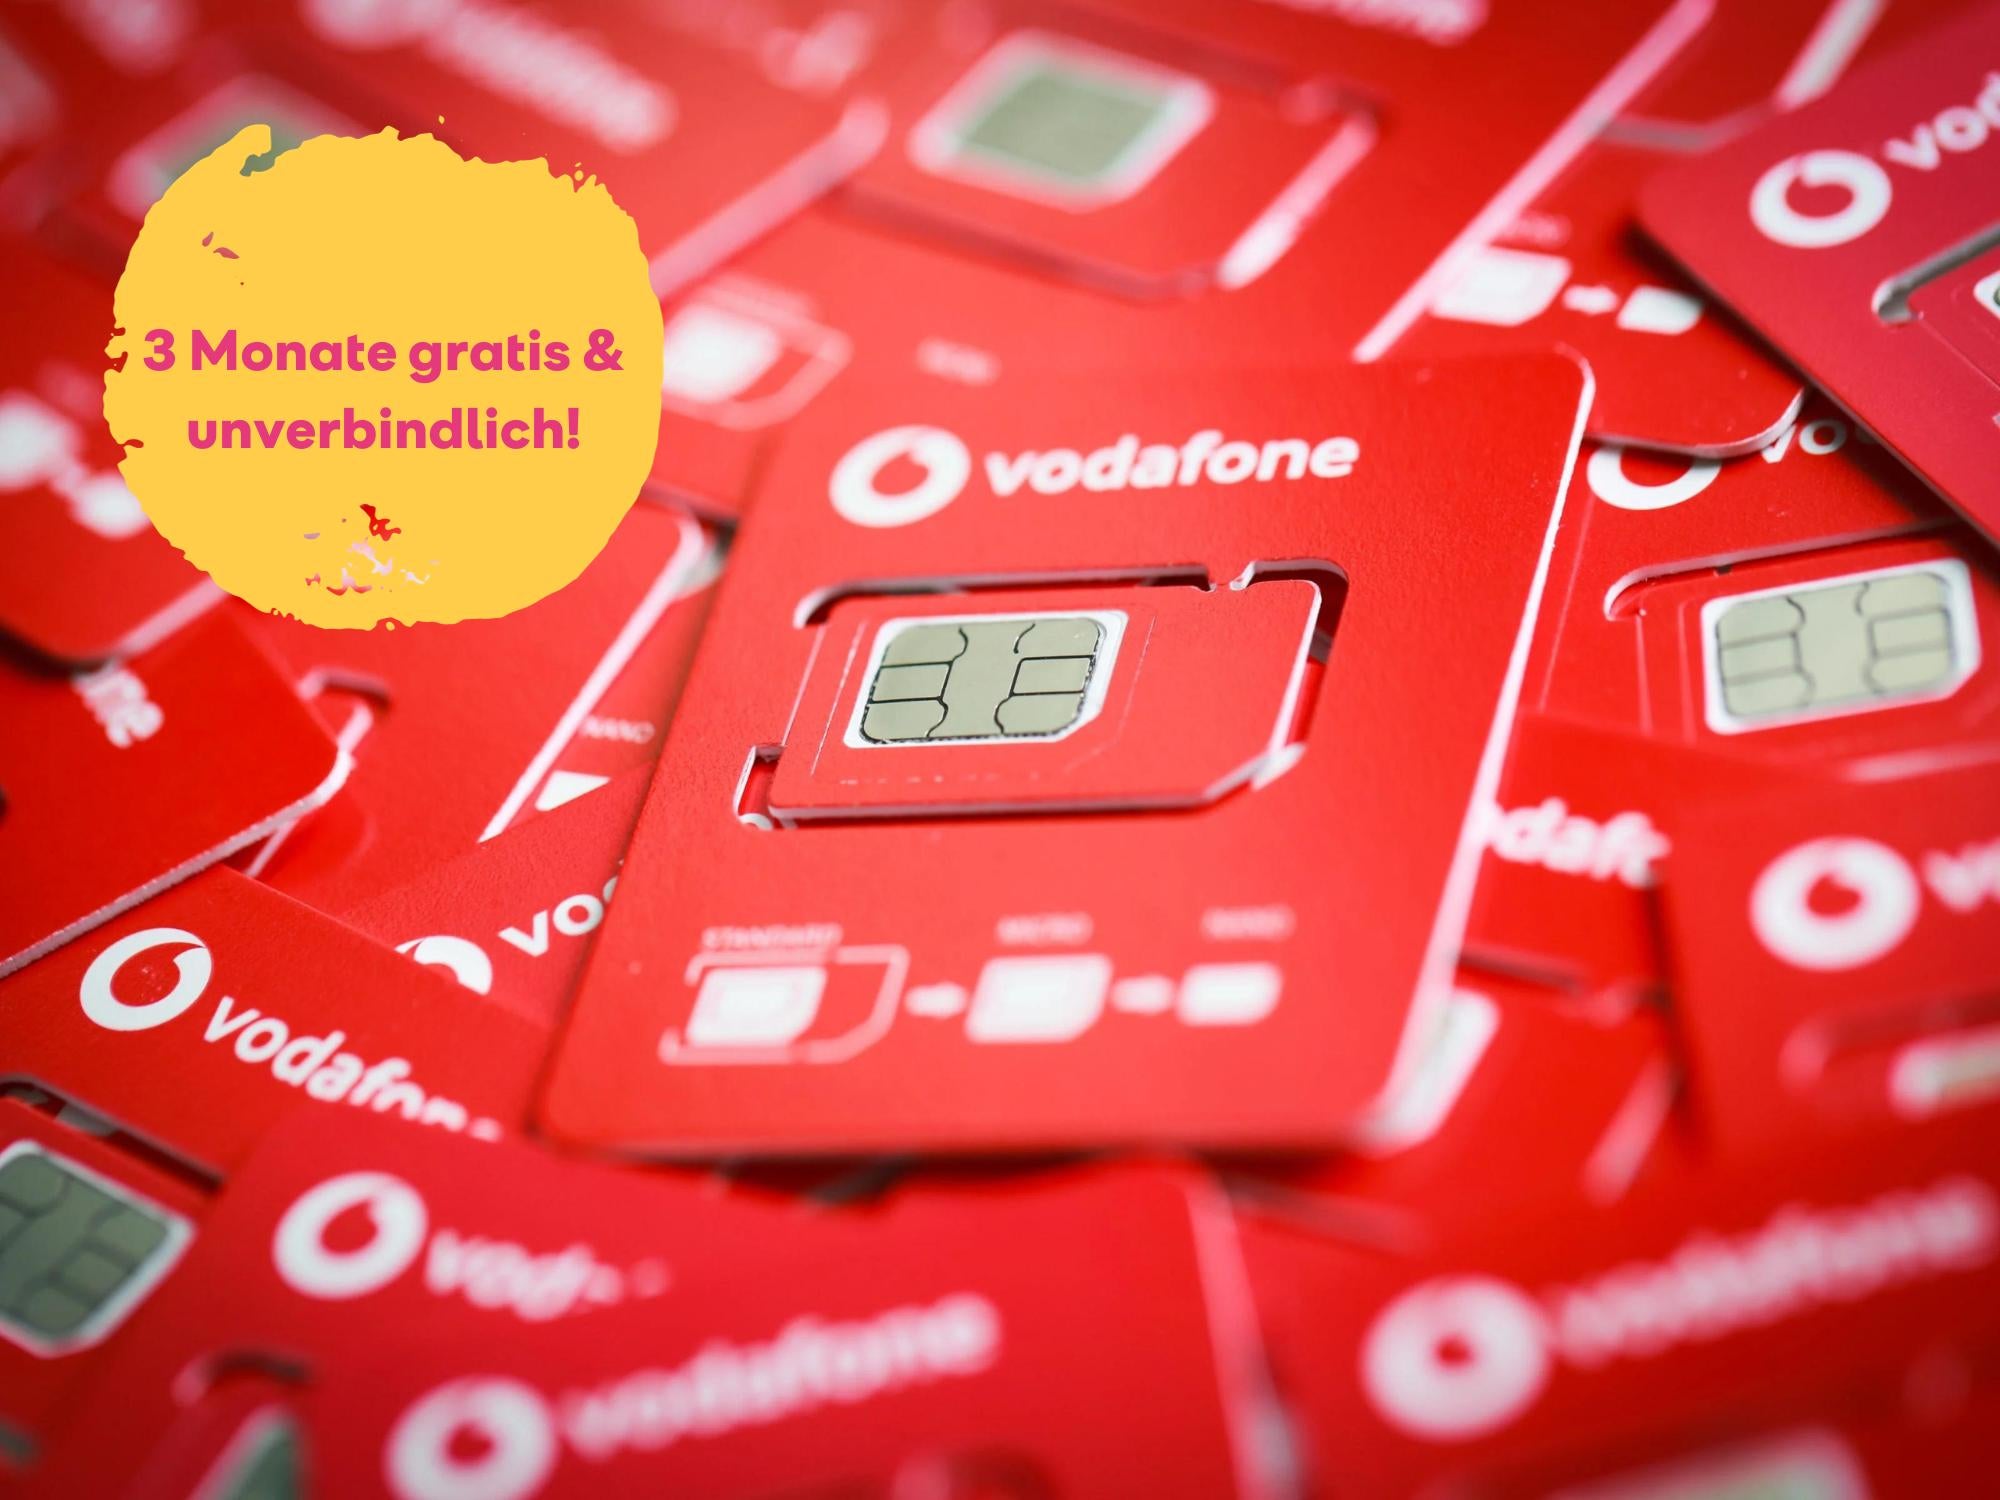 #Das ist doch ein Scherz: Vodafone-Tarif mit 5G und Co. komplett kostenlos & unverbindlich